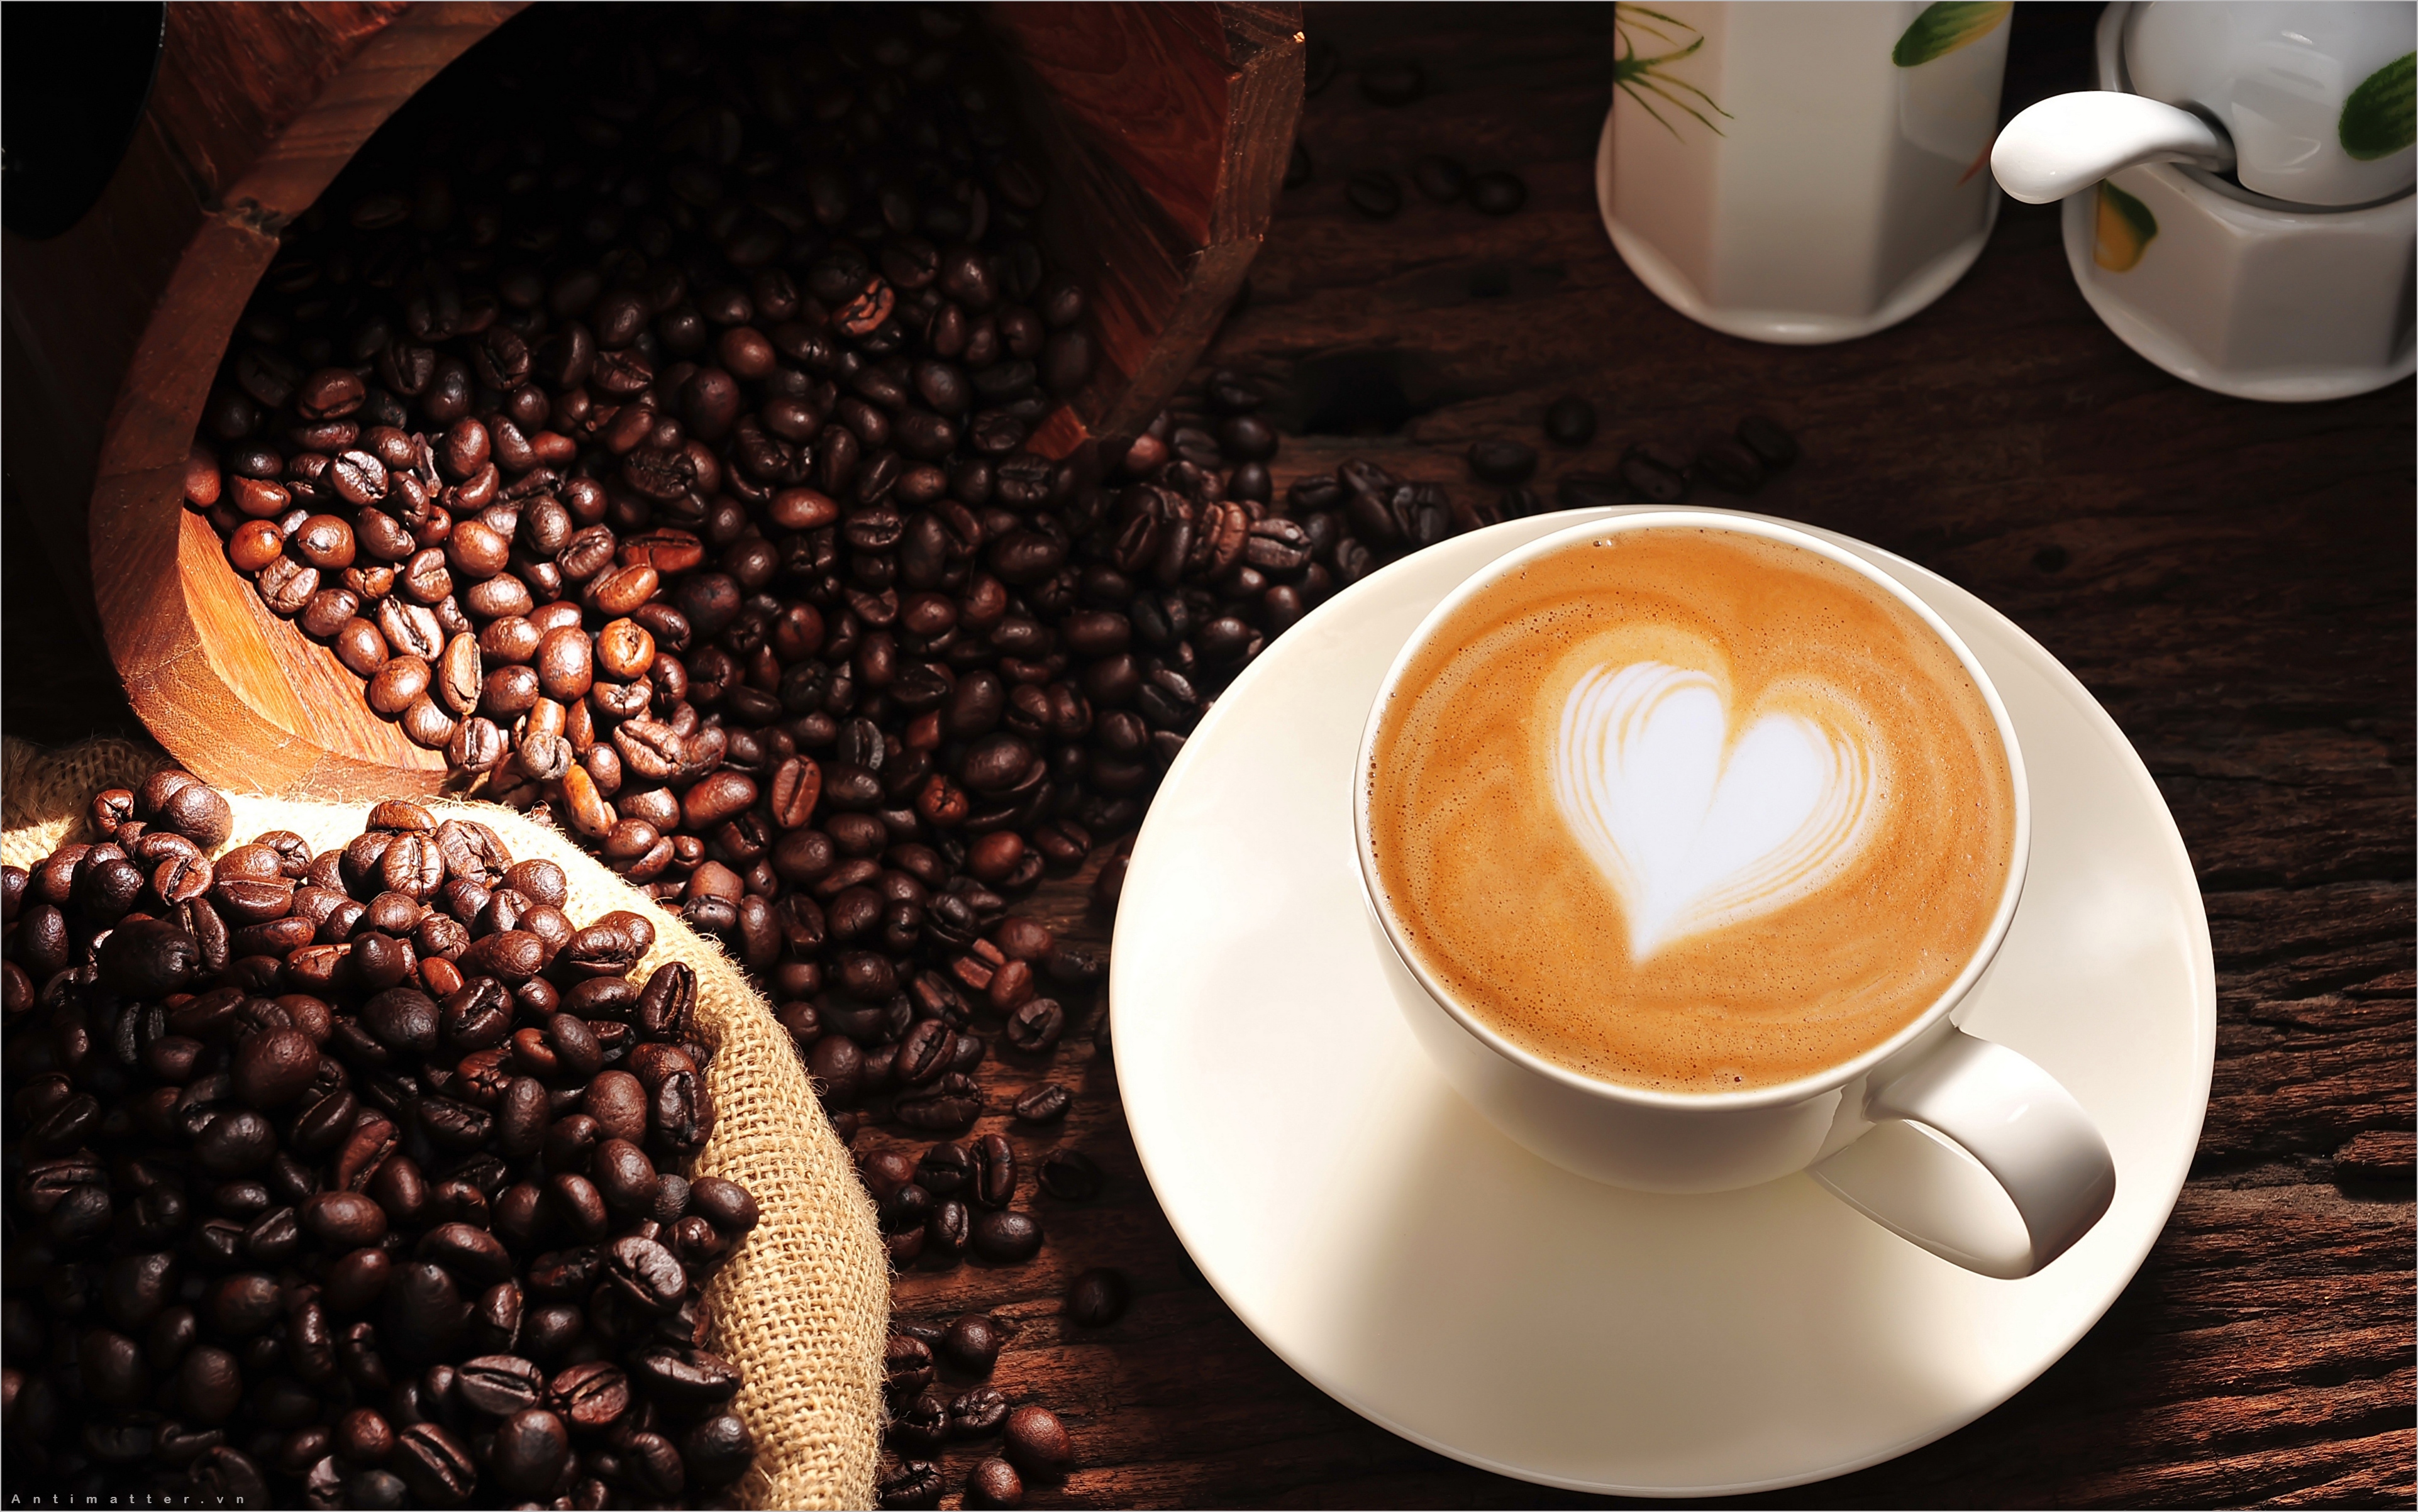 Một ly cà phê vài ngón tay có thể giúp bạn quên đi những lo âu và nỗi buồn đang ám ảnh bạn. Ghé thăm quán cafe buồn, tìm cho mình một góc yên tĩnh và cảm nhận những chất liệu cafe đặc biệt để xua tan mệt mỏi trong linh hồn.